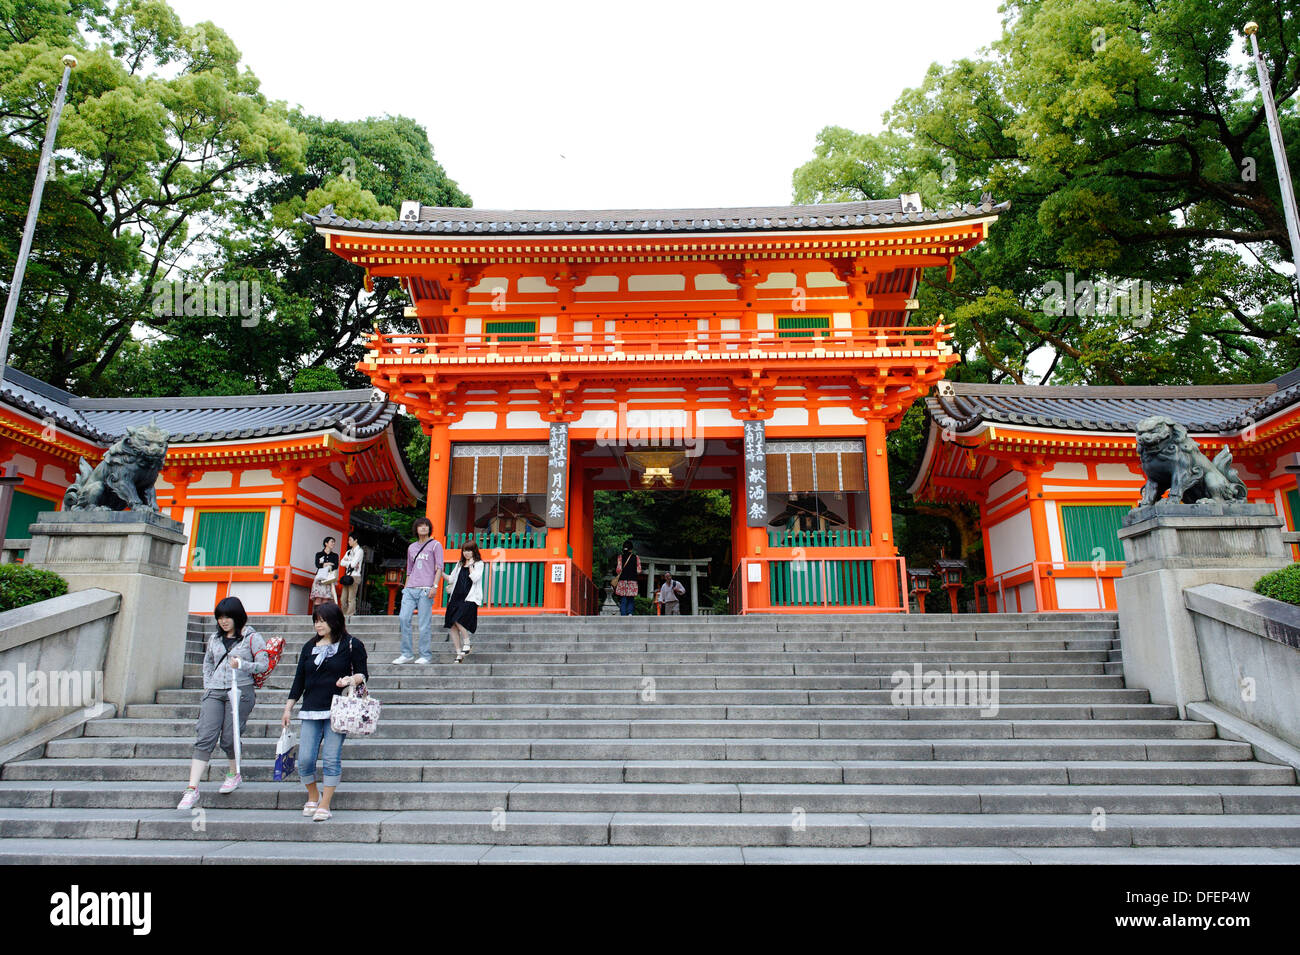 Yasaka Santuario Sintoísta incluye varios edificios, puertas y un vestíbulo principal, el distrito Gion, Kioto, provincia de Kansai, la isla de Honshu, Foto de stock